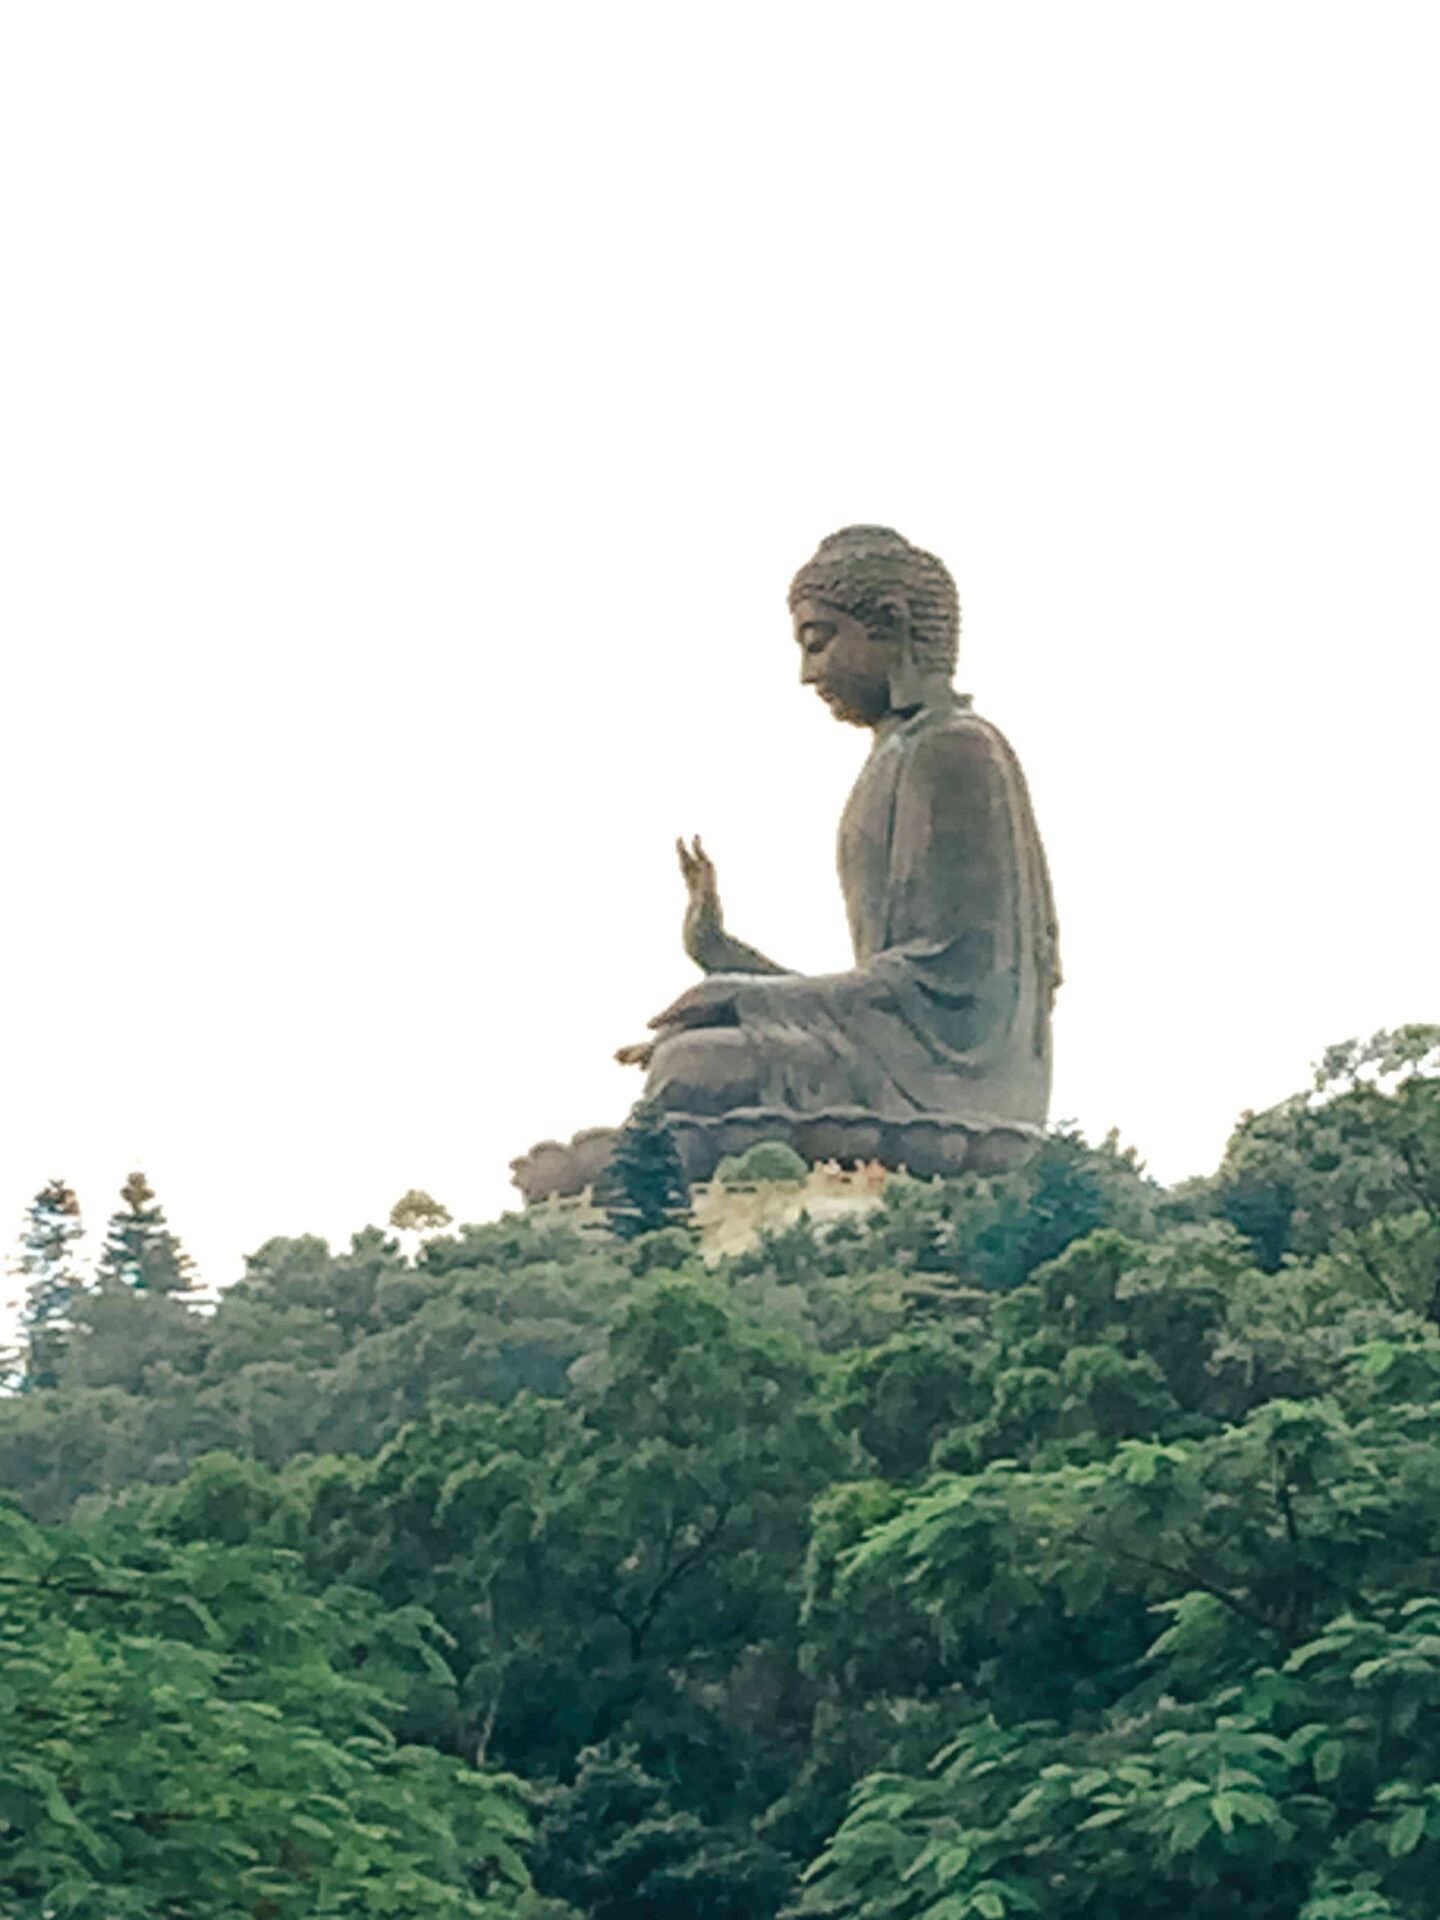 Hong Kong - Tian Tan Buddha